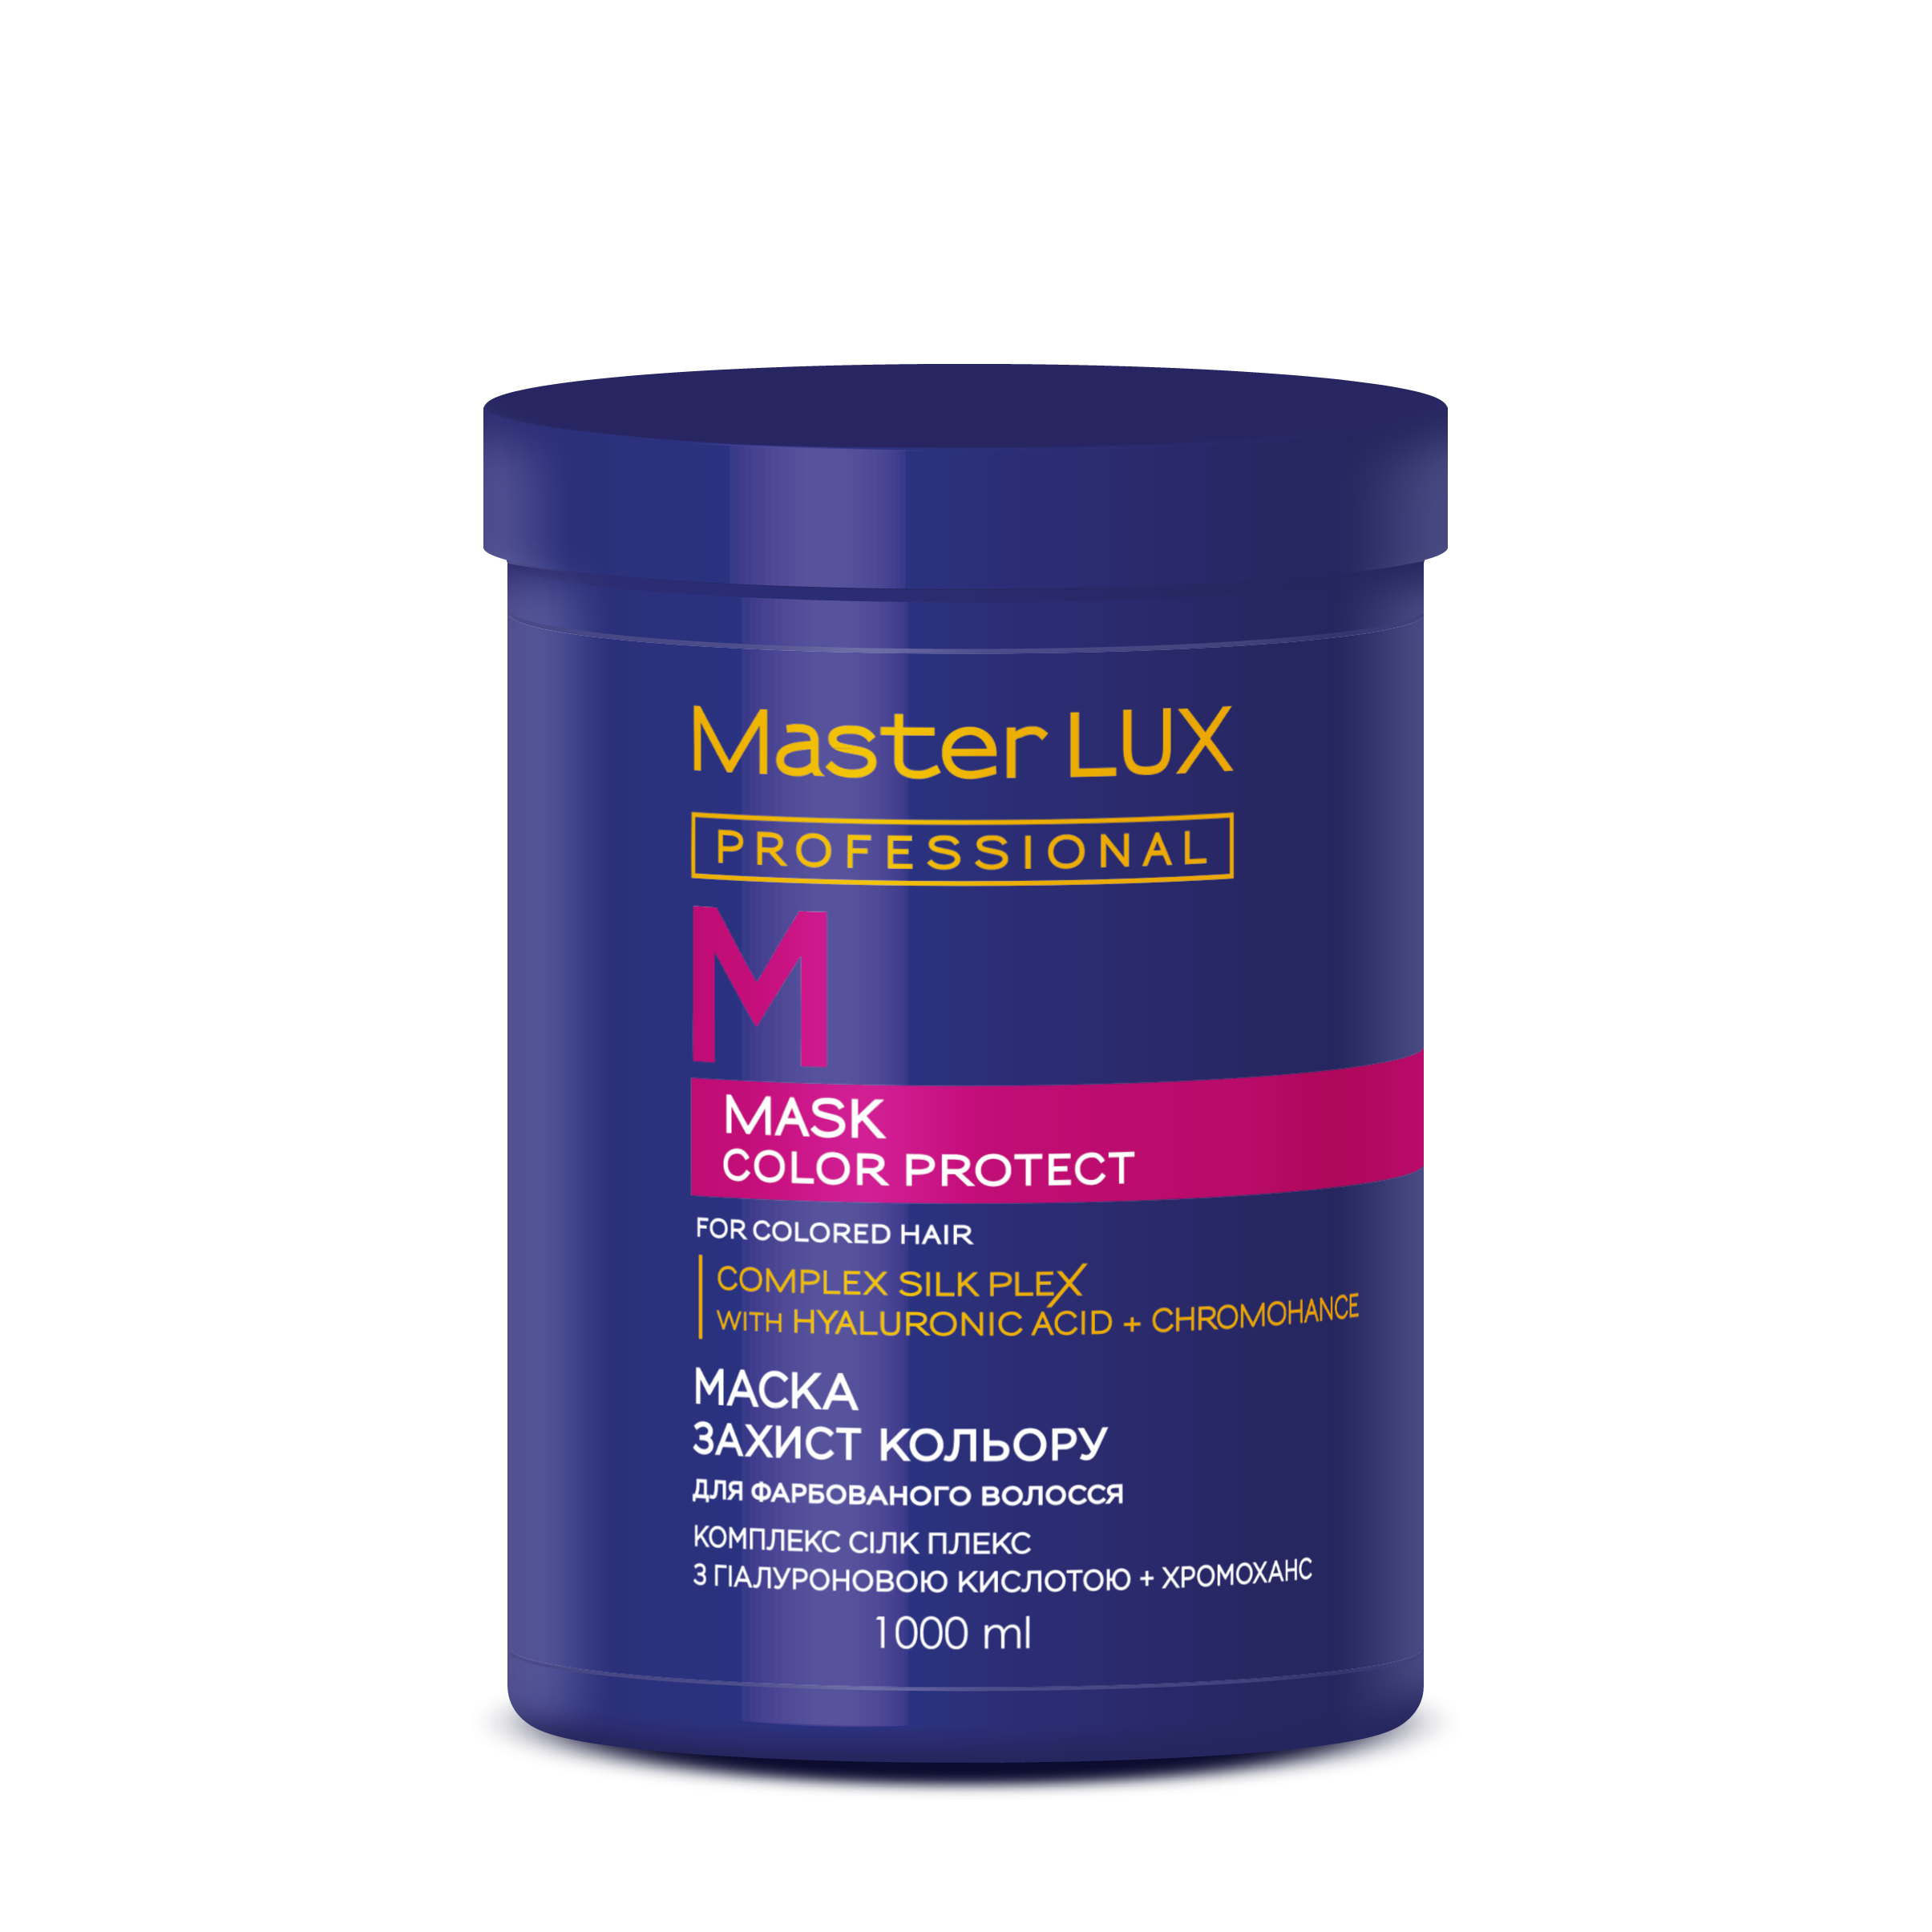 Маска для фарбованого волосся - Захист кольору COLOR PROTECT Master LUX professional